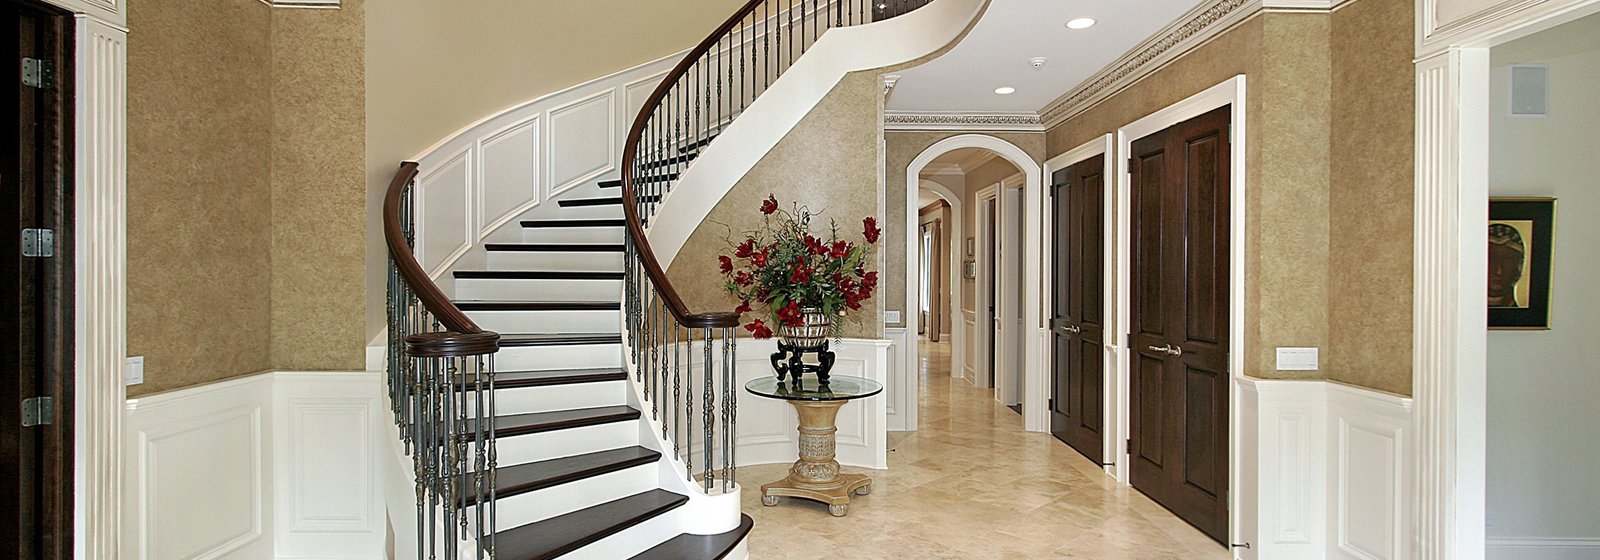 Elegant Stair